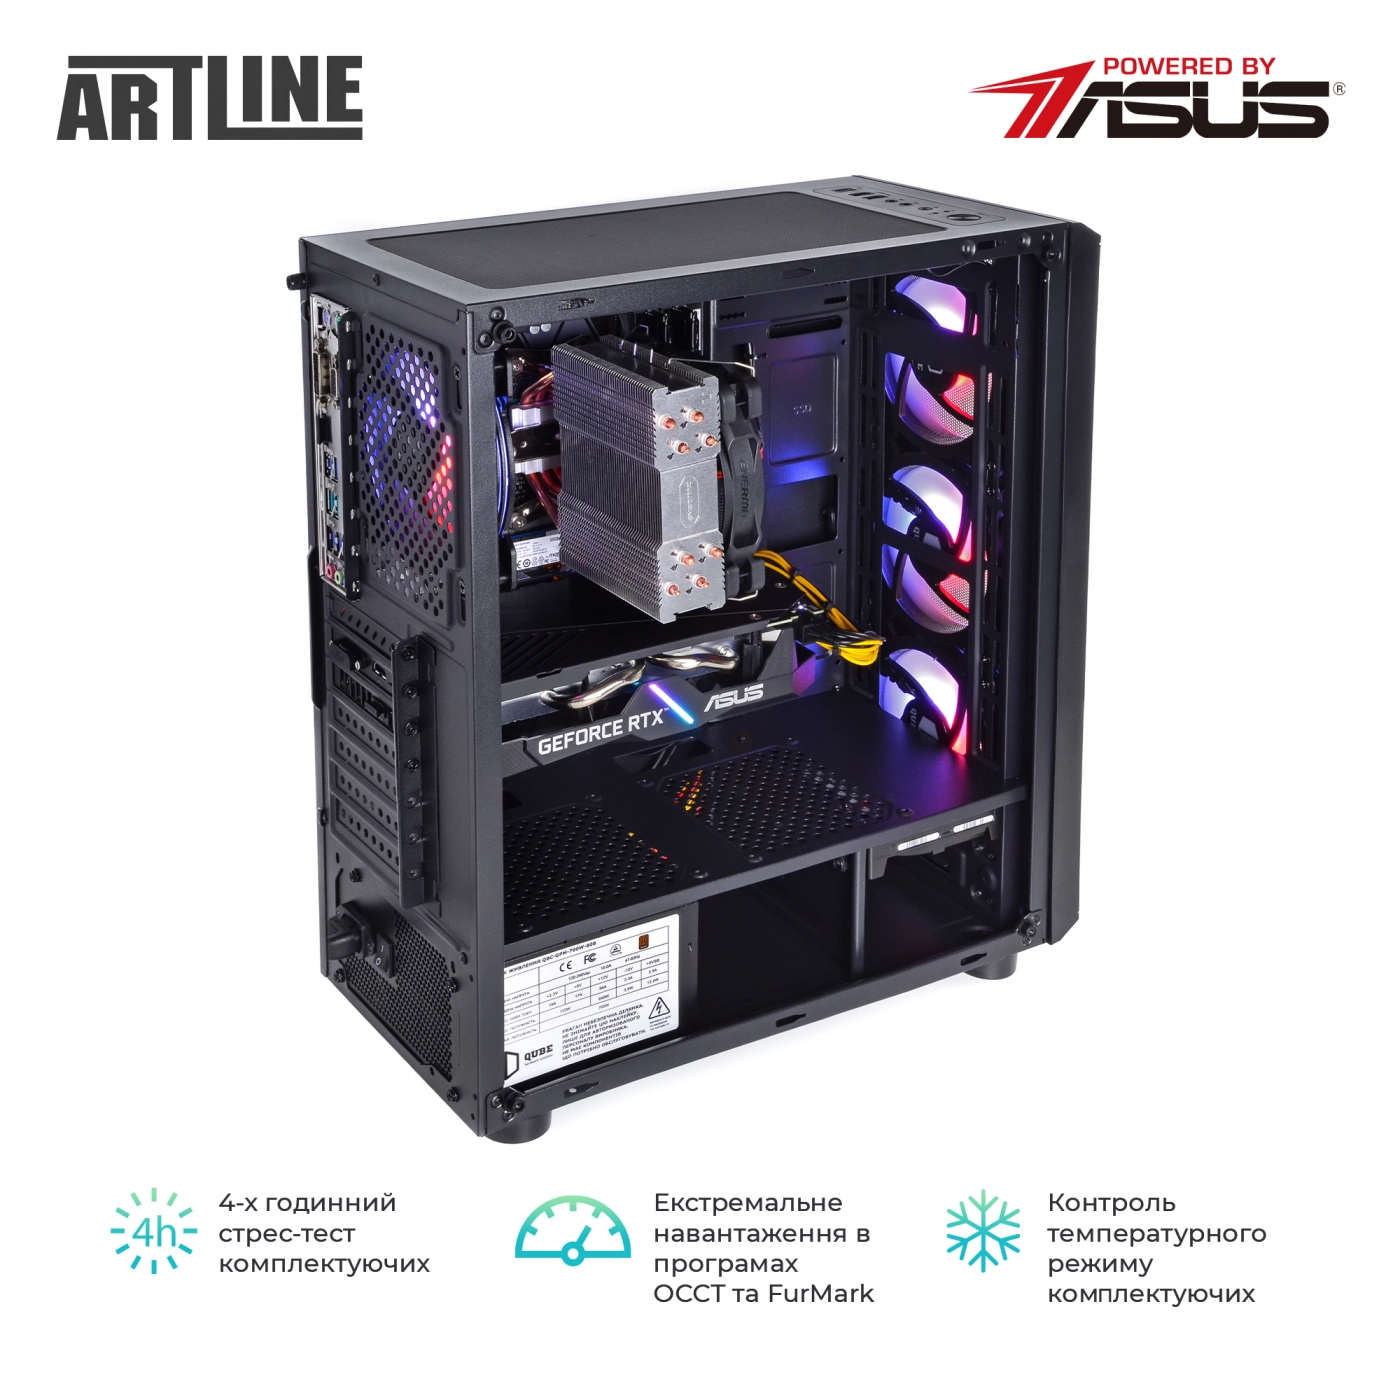 Купить Компьютер ARTLINE Gaming X56v23 - фото 7